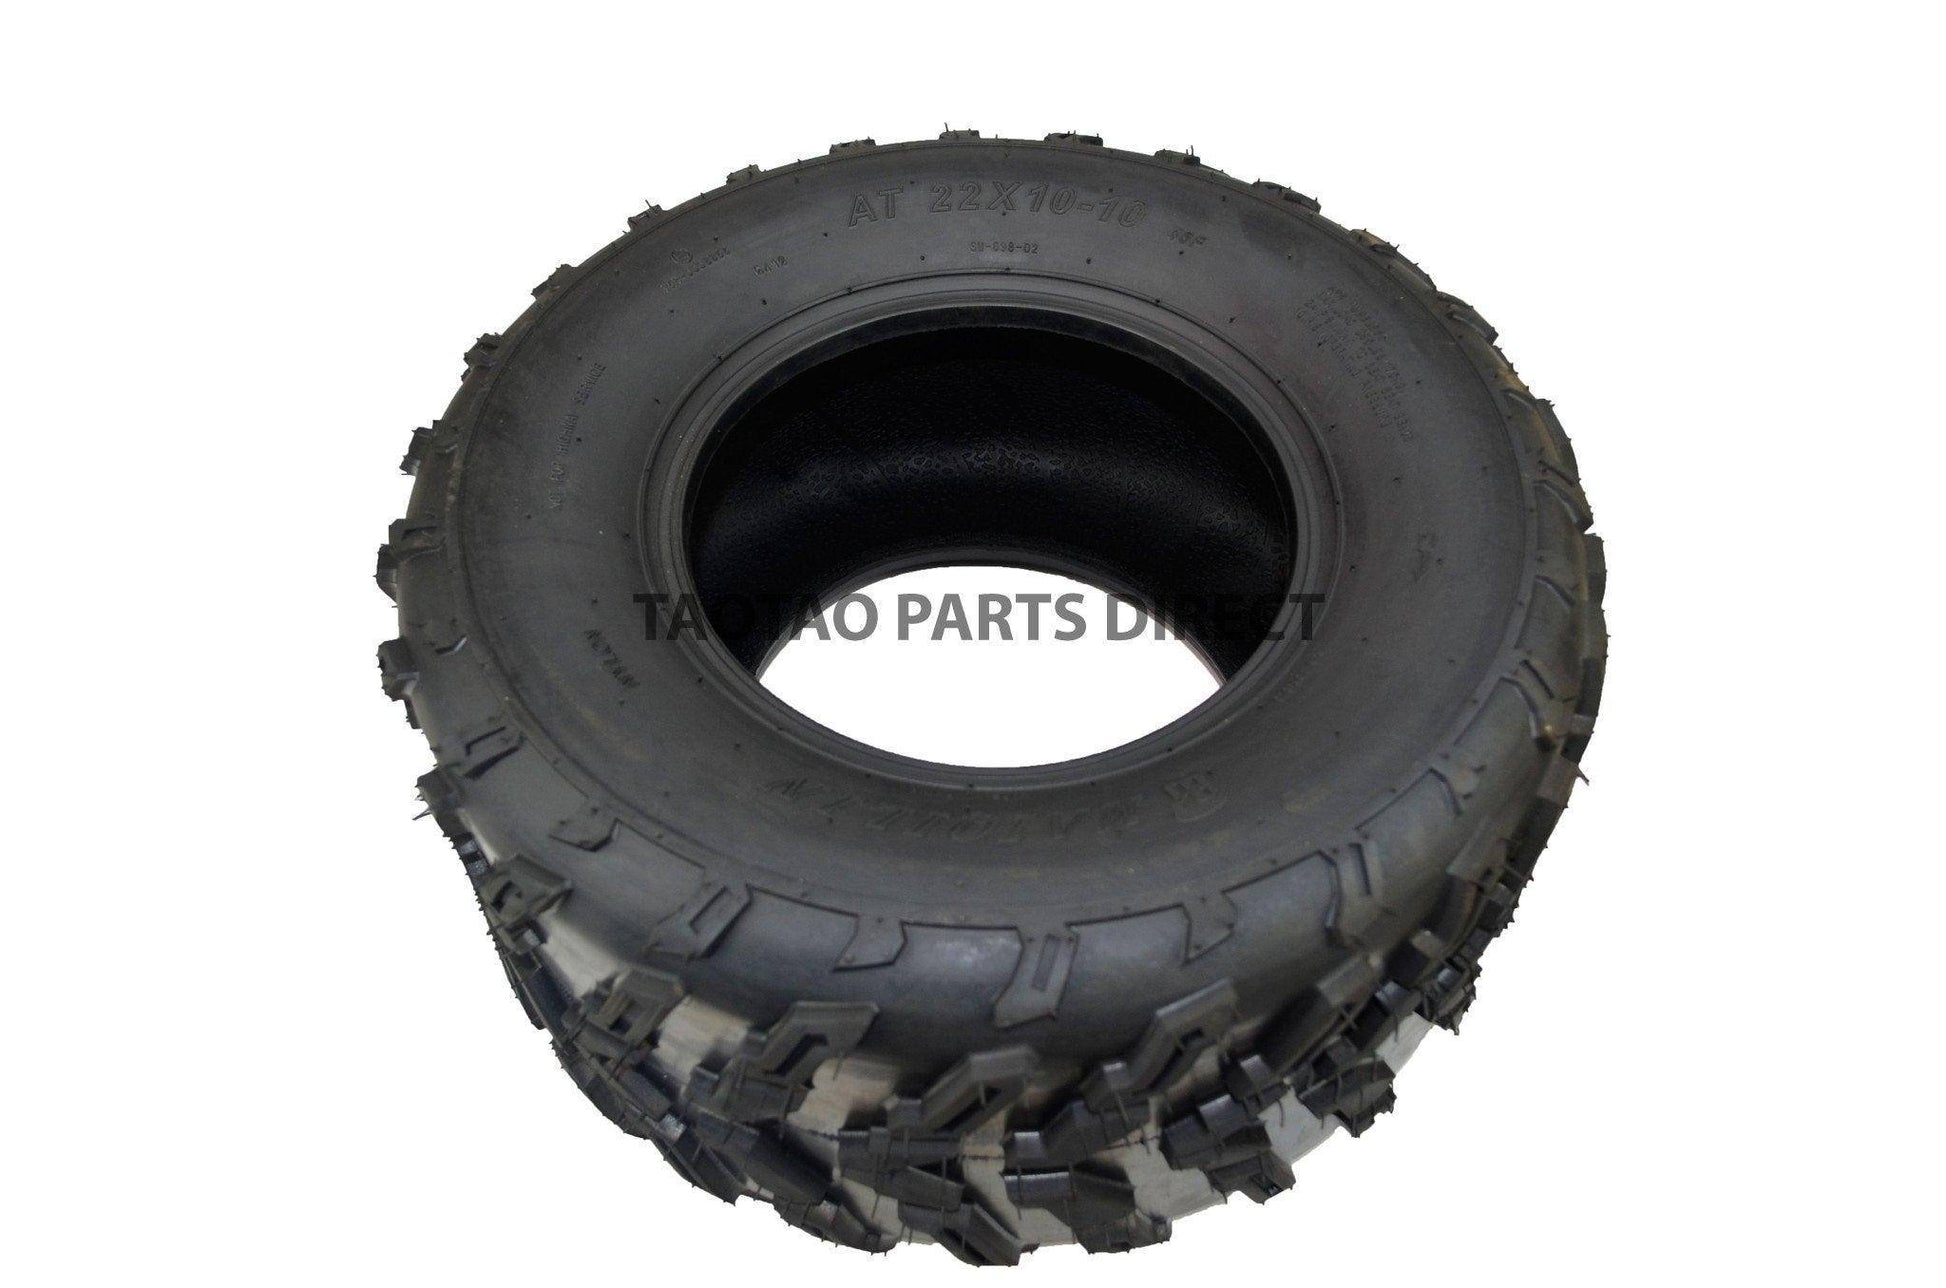 22x10-10 Tire - TaoTao Parts Direct